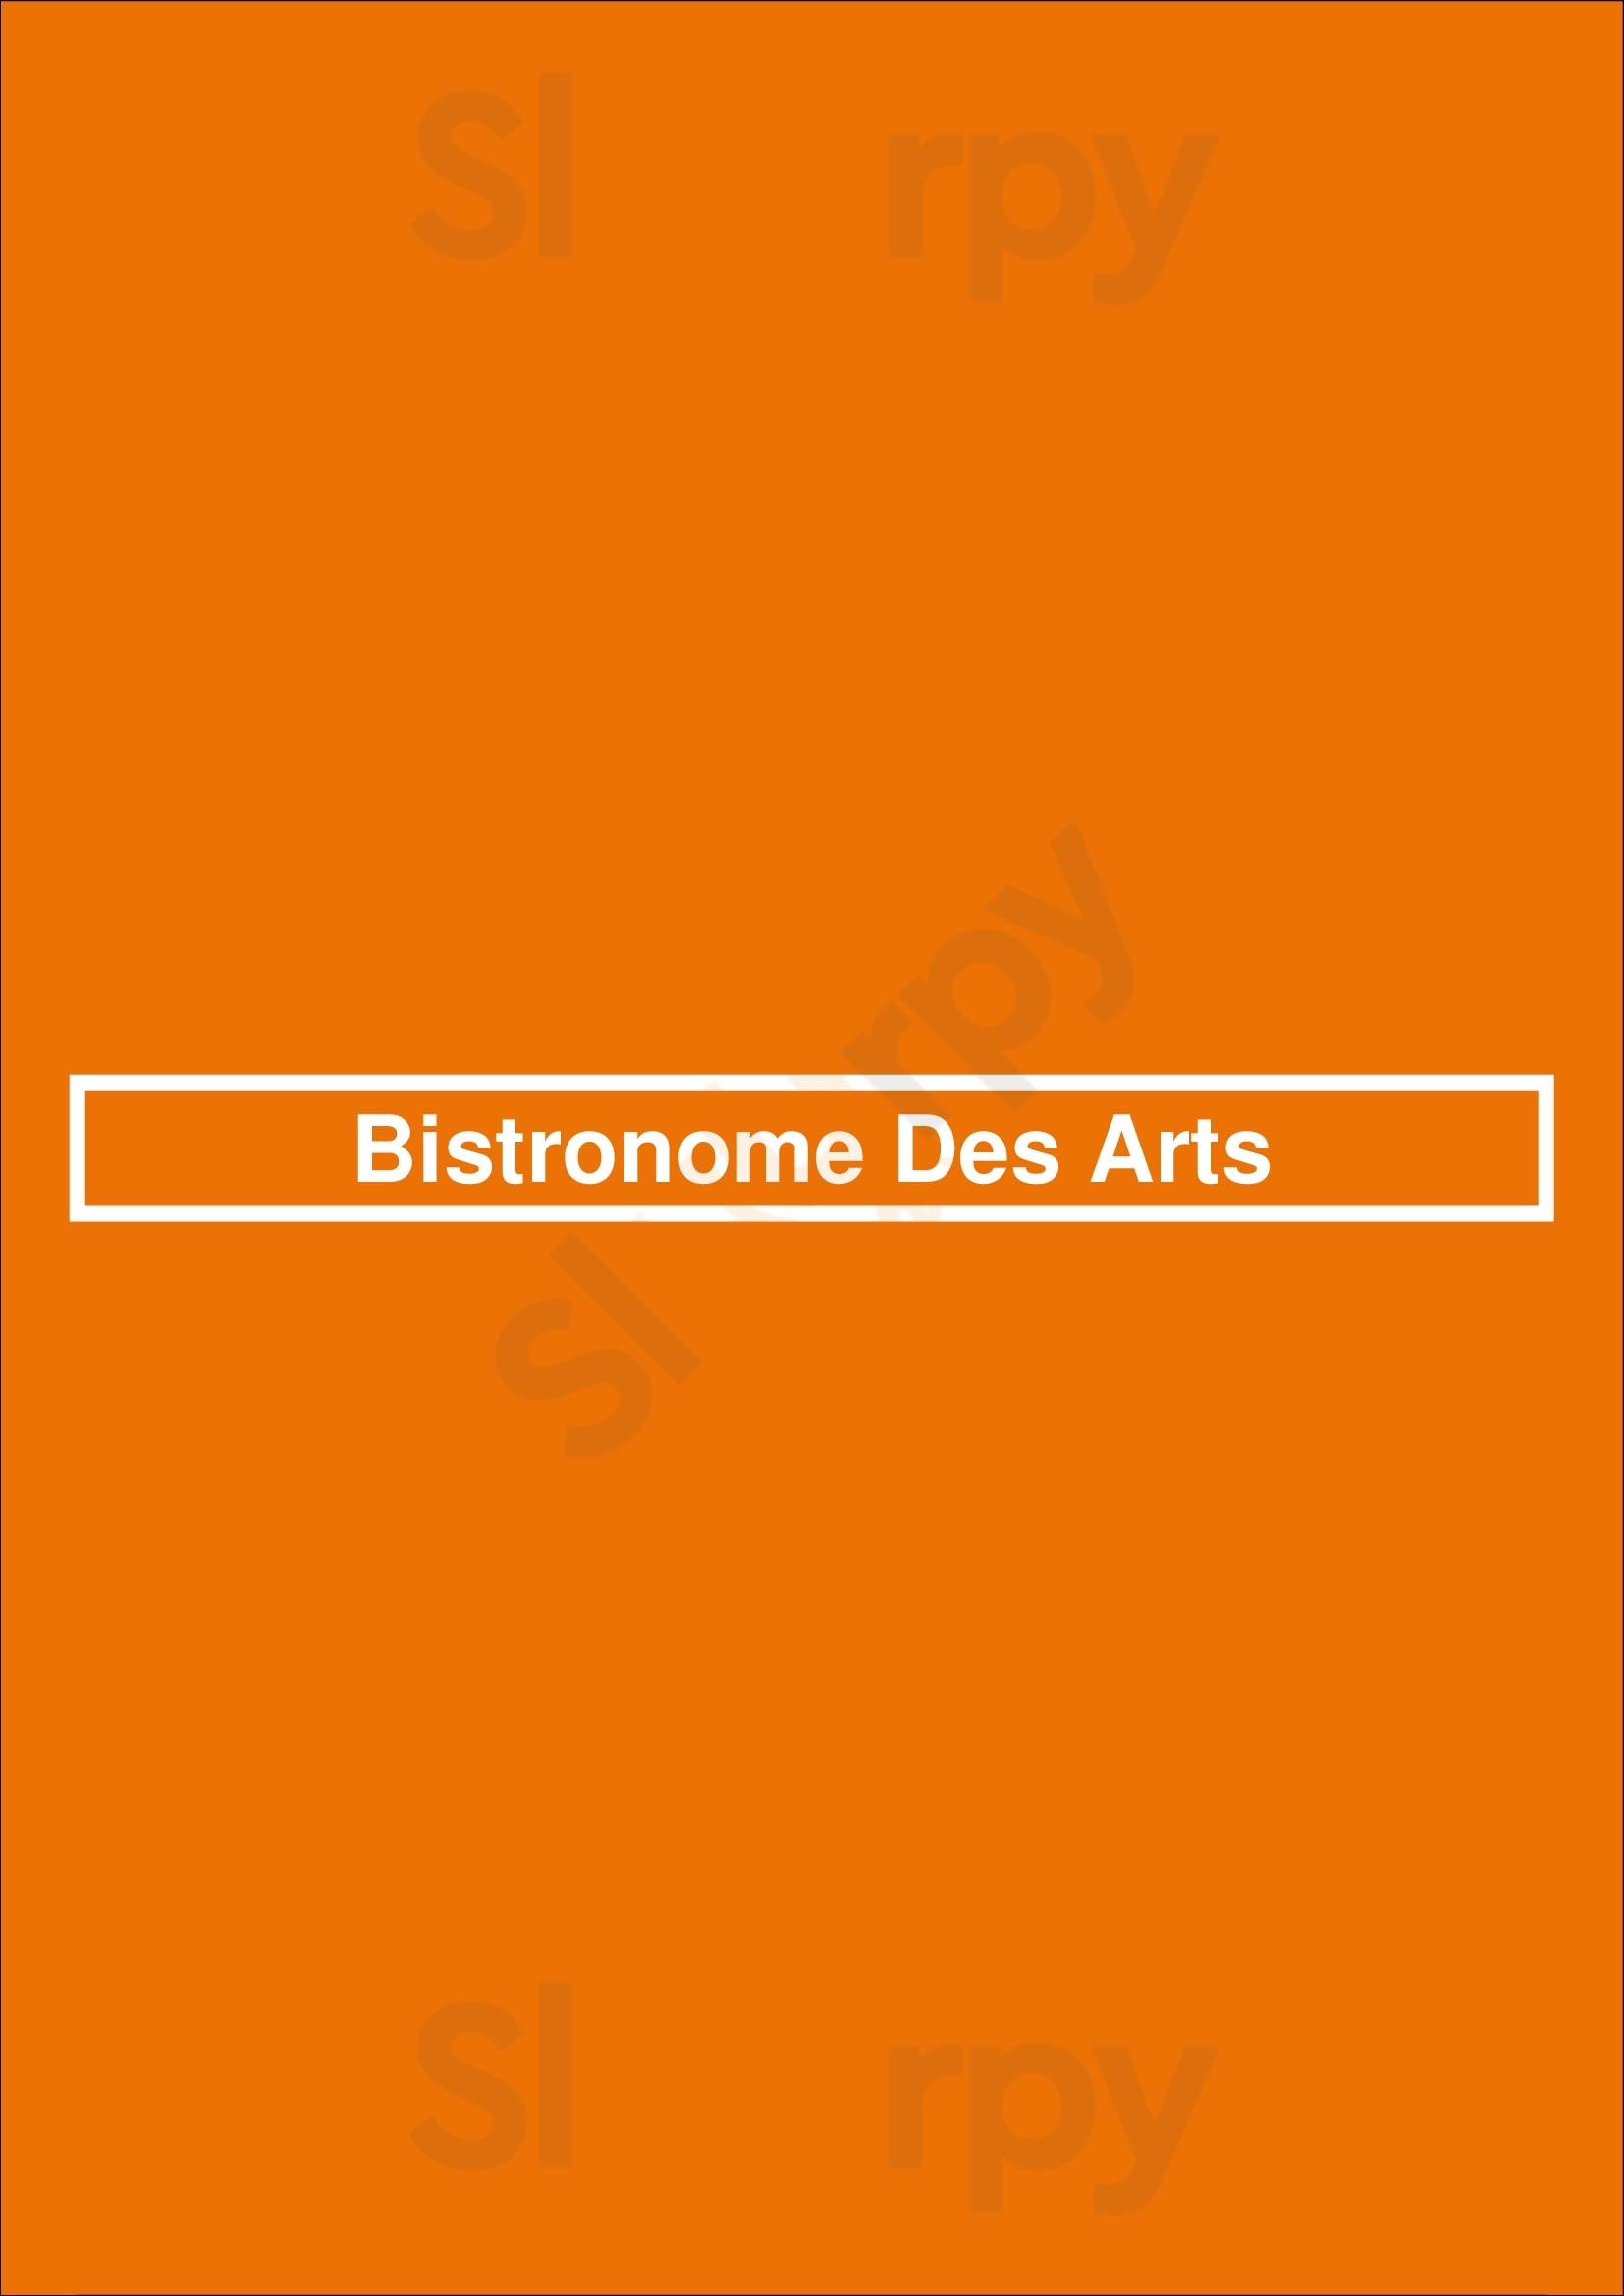 Bistronome Des Arts Utrecht Menu - 1